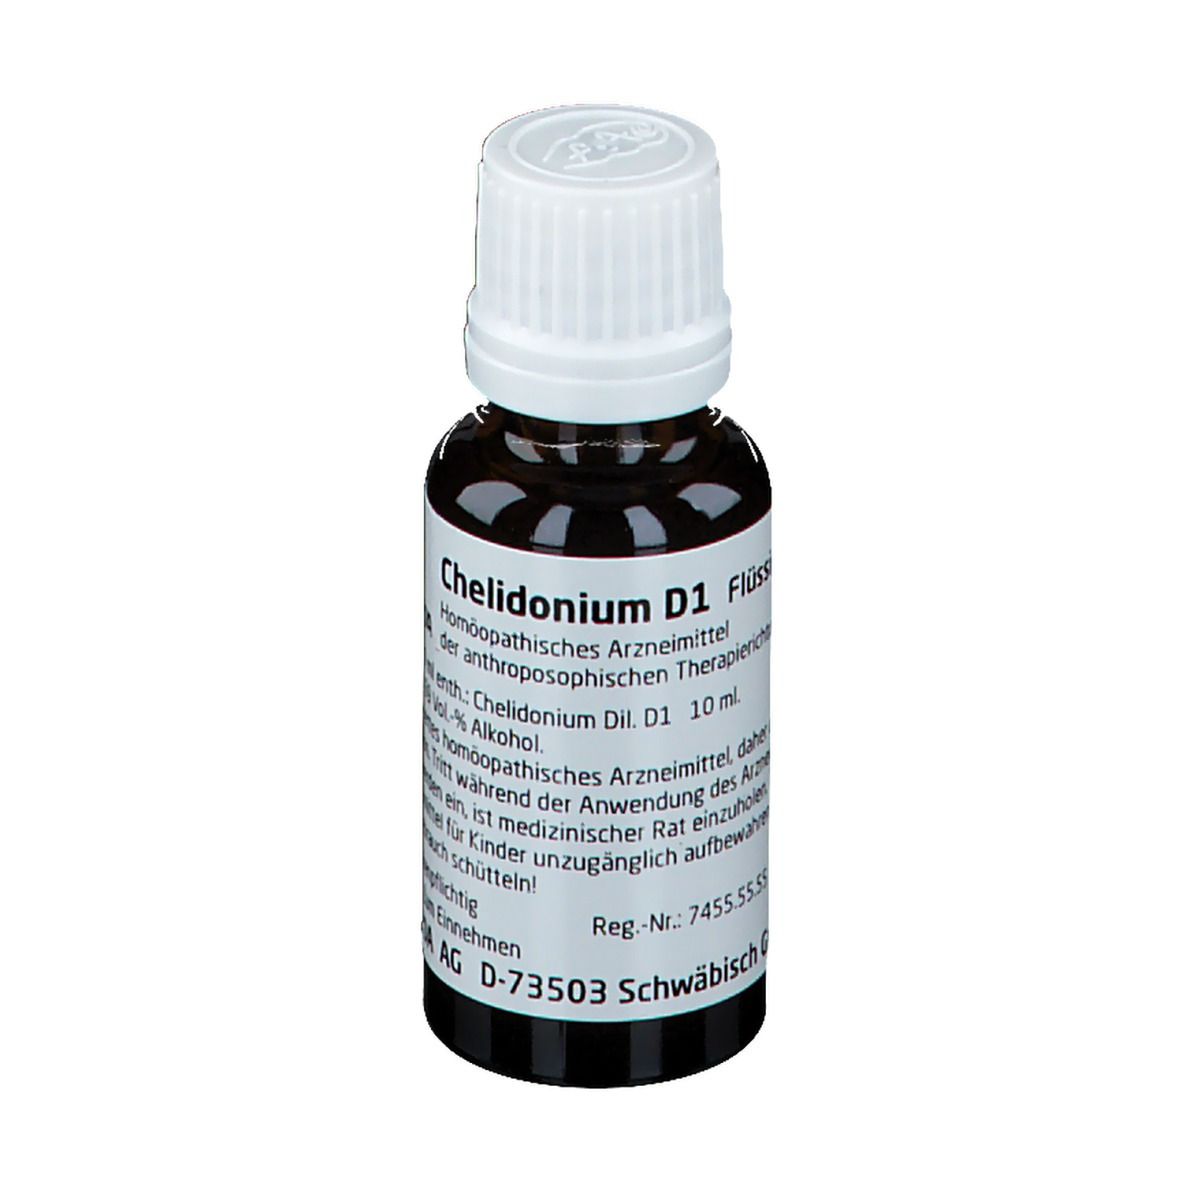 Chelidonium D1 Dilution